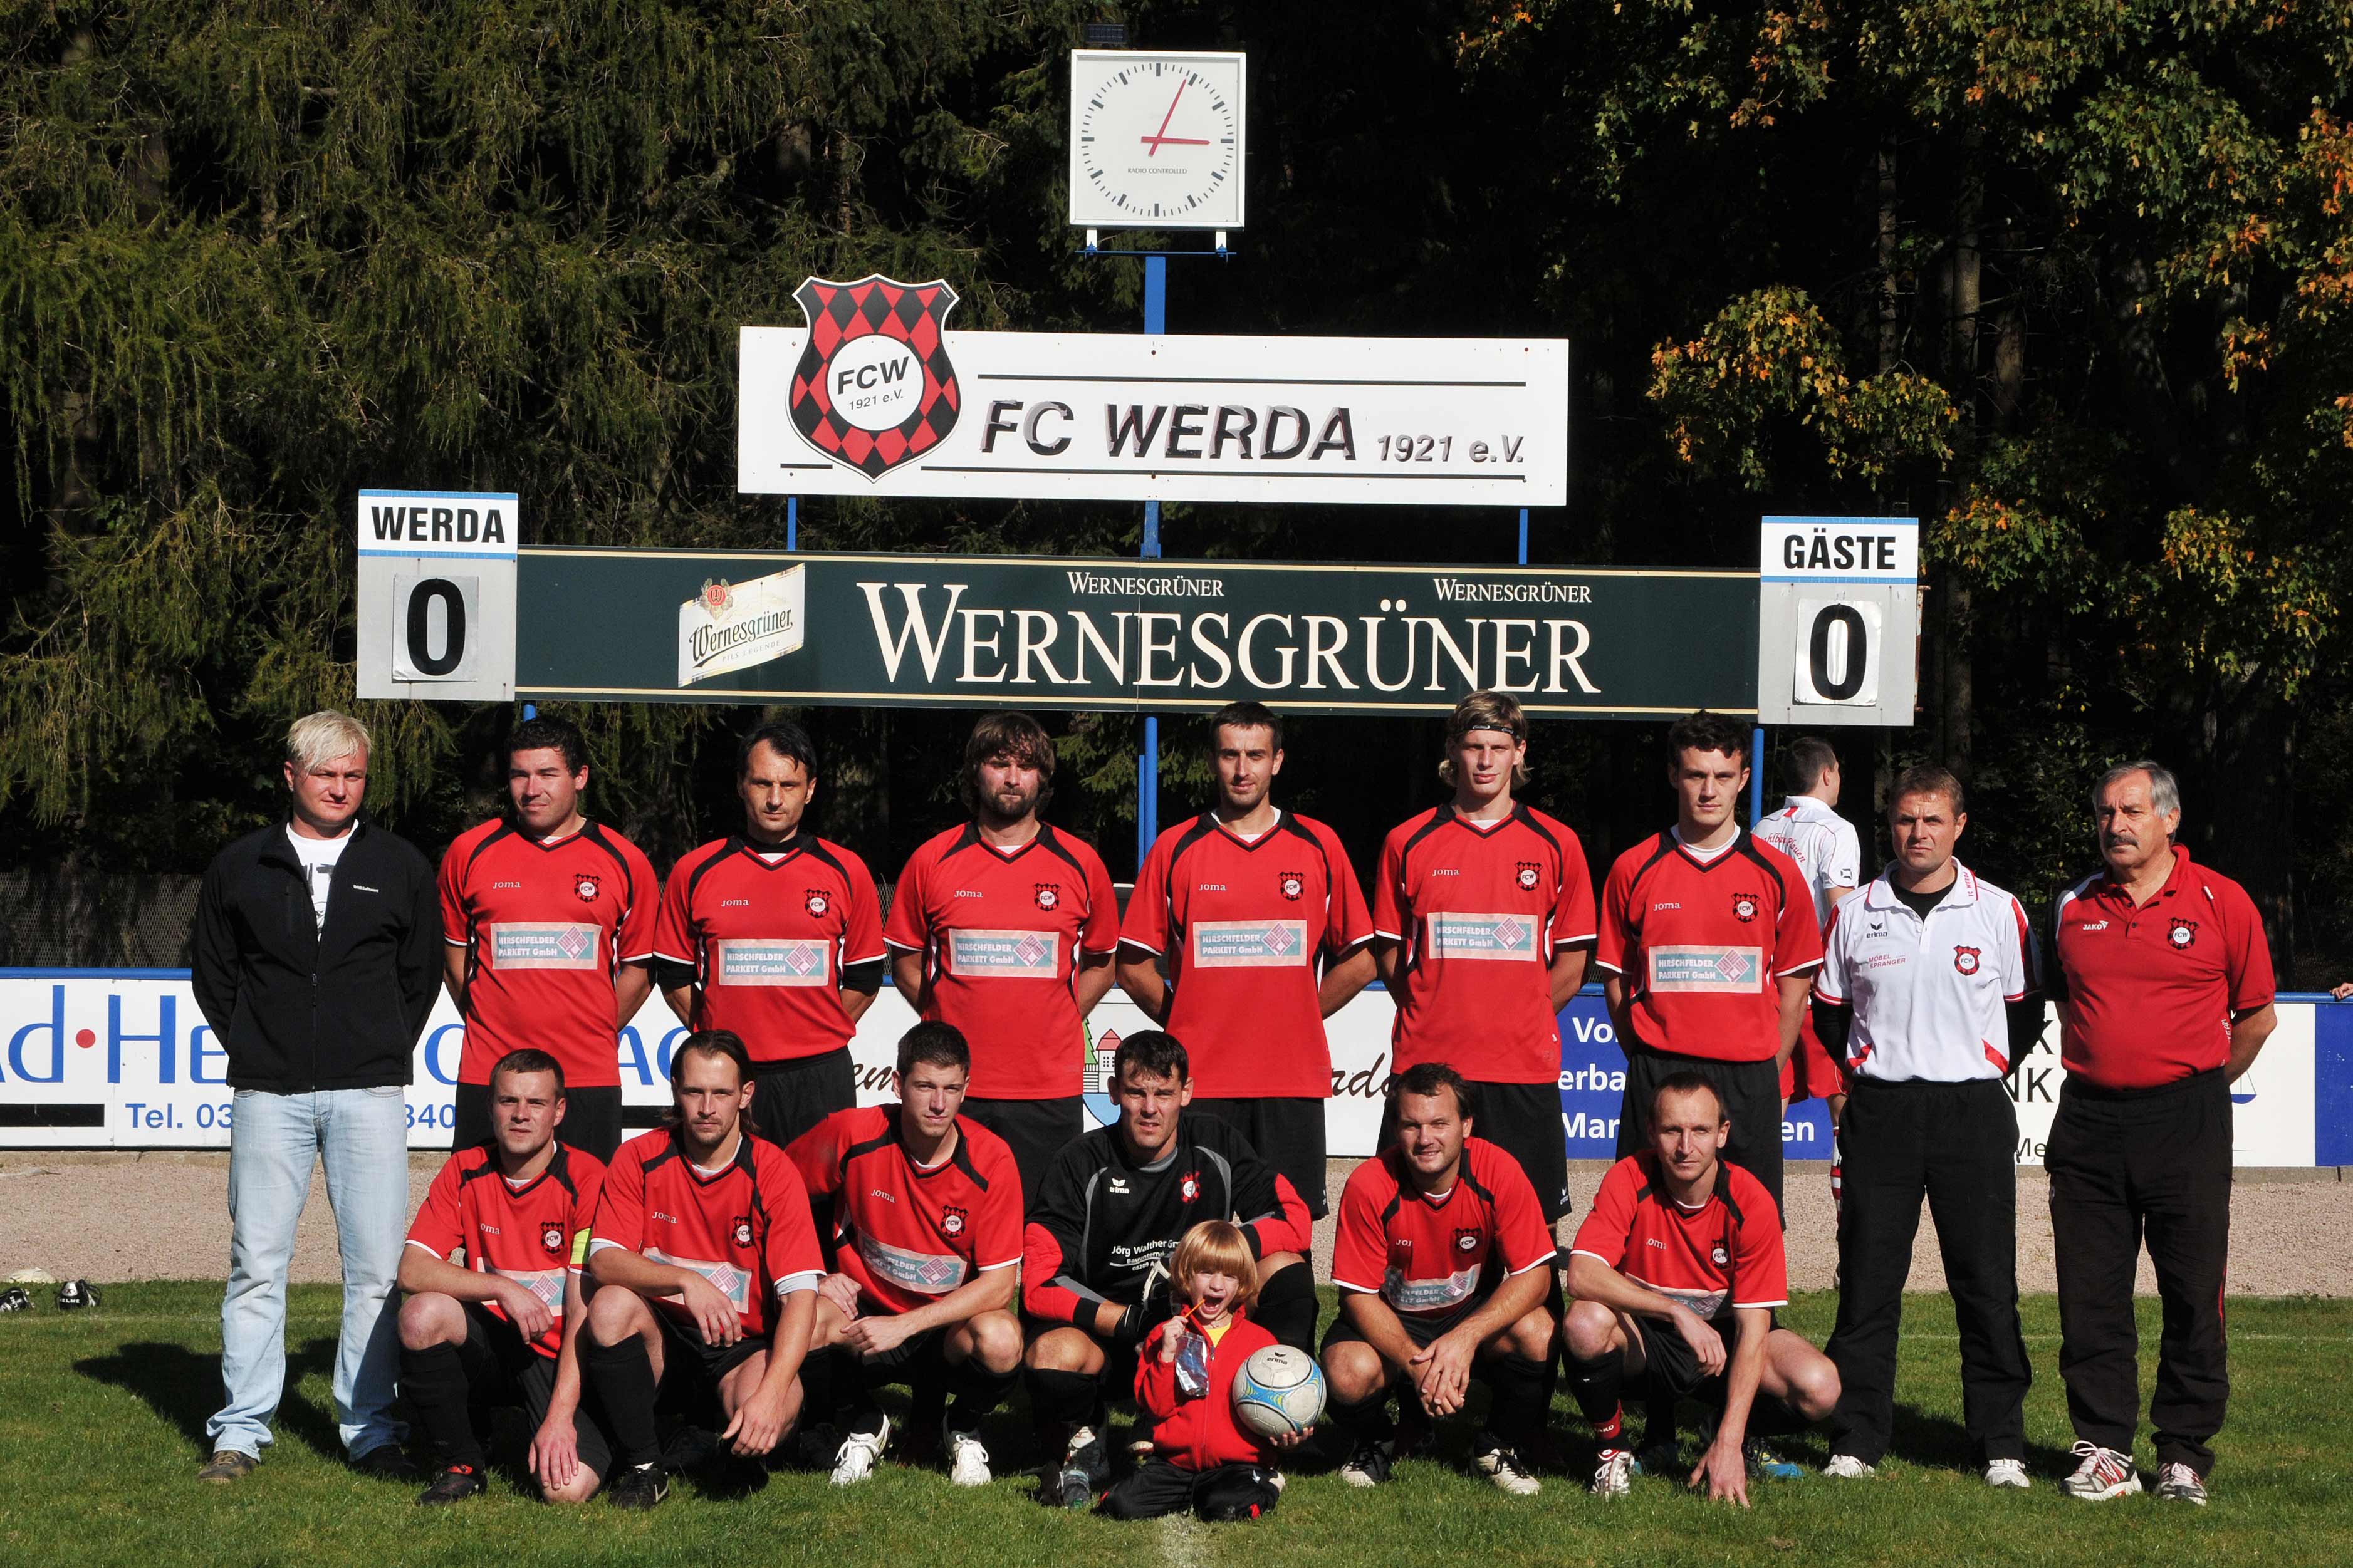 Mannschaftsfoto/Teamfoto von FC Werda